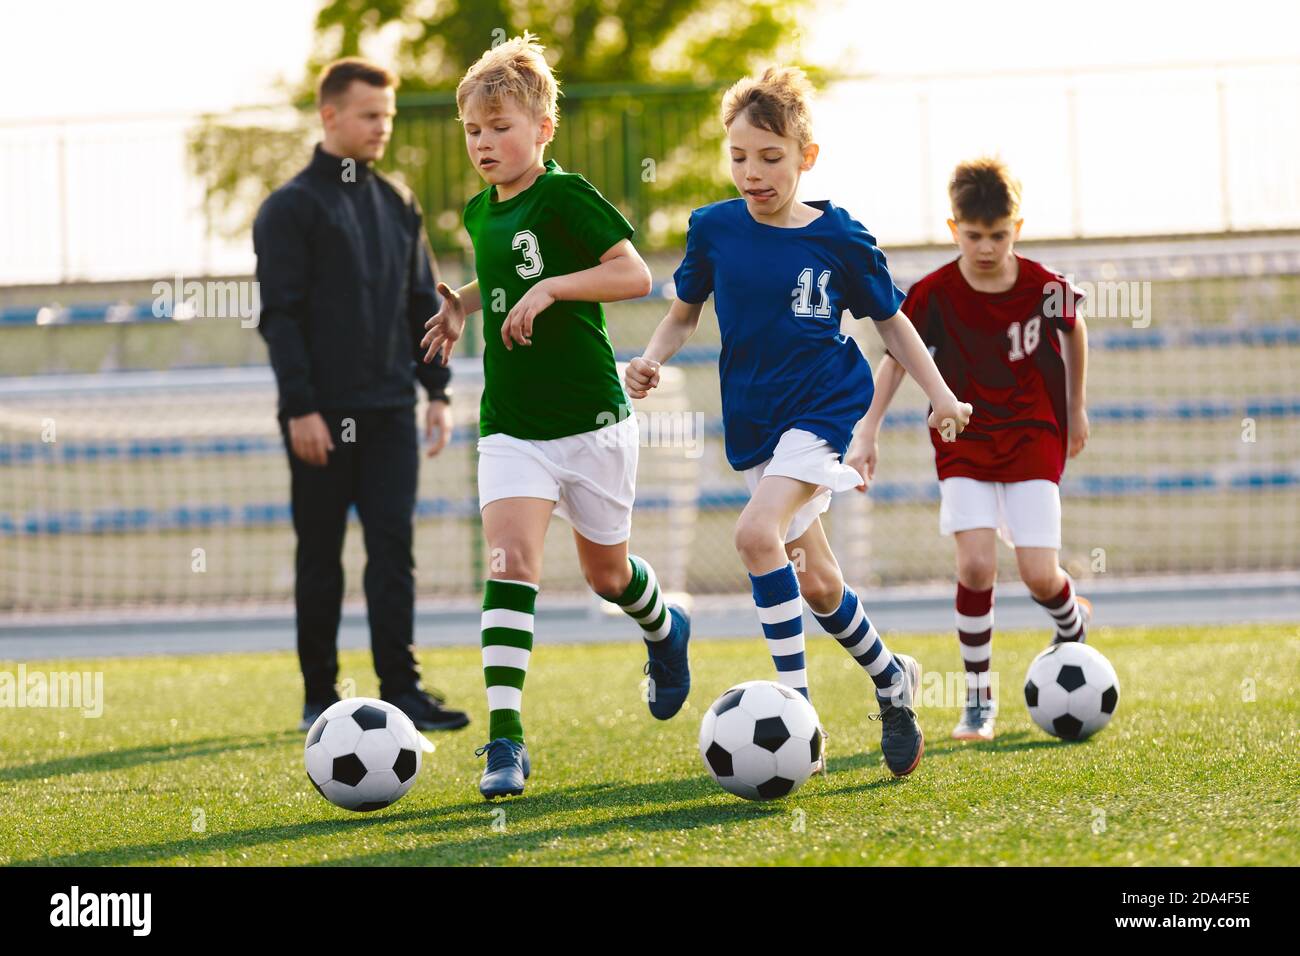 Jeunes garçons en train de courir sur l'entraînement de football. Happy Kids sur les sports de football. Enfants dans des chemises en jersey colorées Banque D'Images